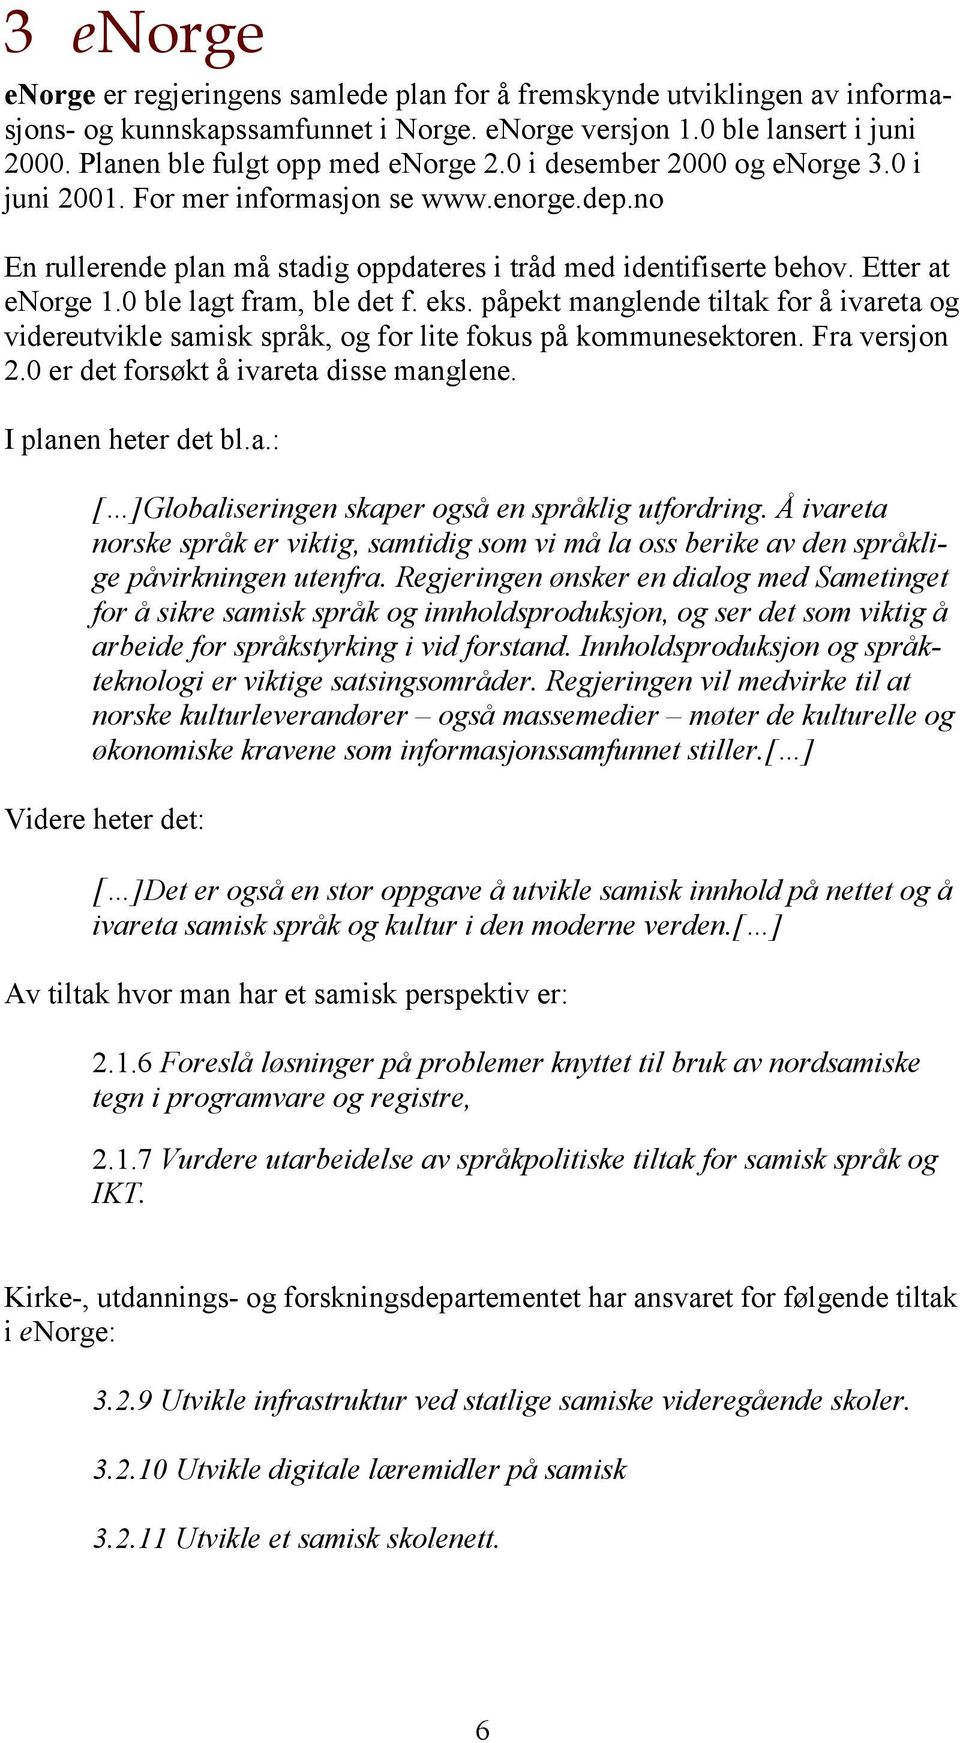 0 ble lagt fram, ble det f. eks. påpekt manglende tiltak for å ivareta og videreutvikle samisk språk, og for lite fokus på kommunesektoren. Fra versjon 2.0 er det forsøkt å ivareta disse manglene.